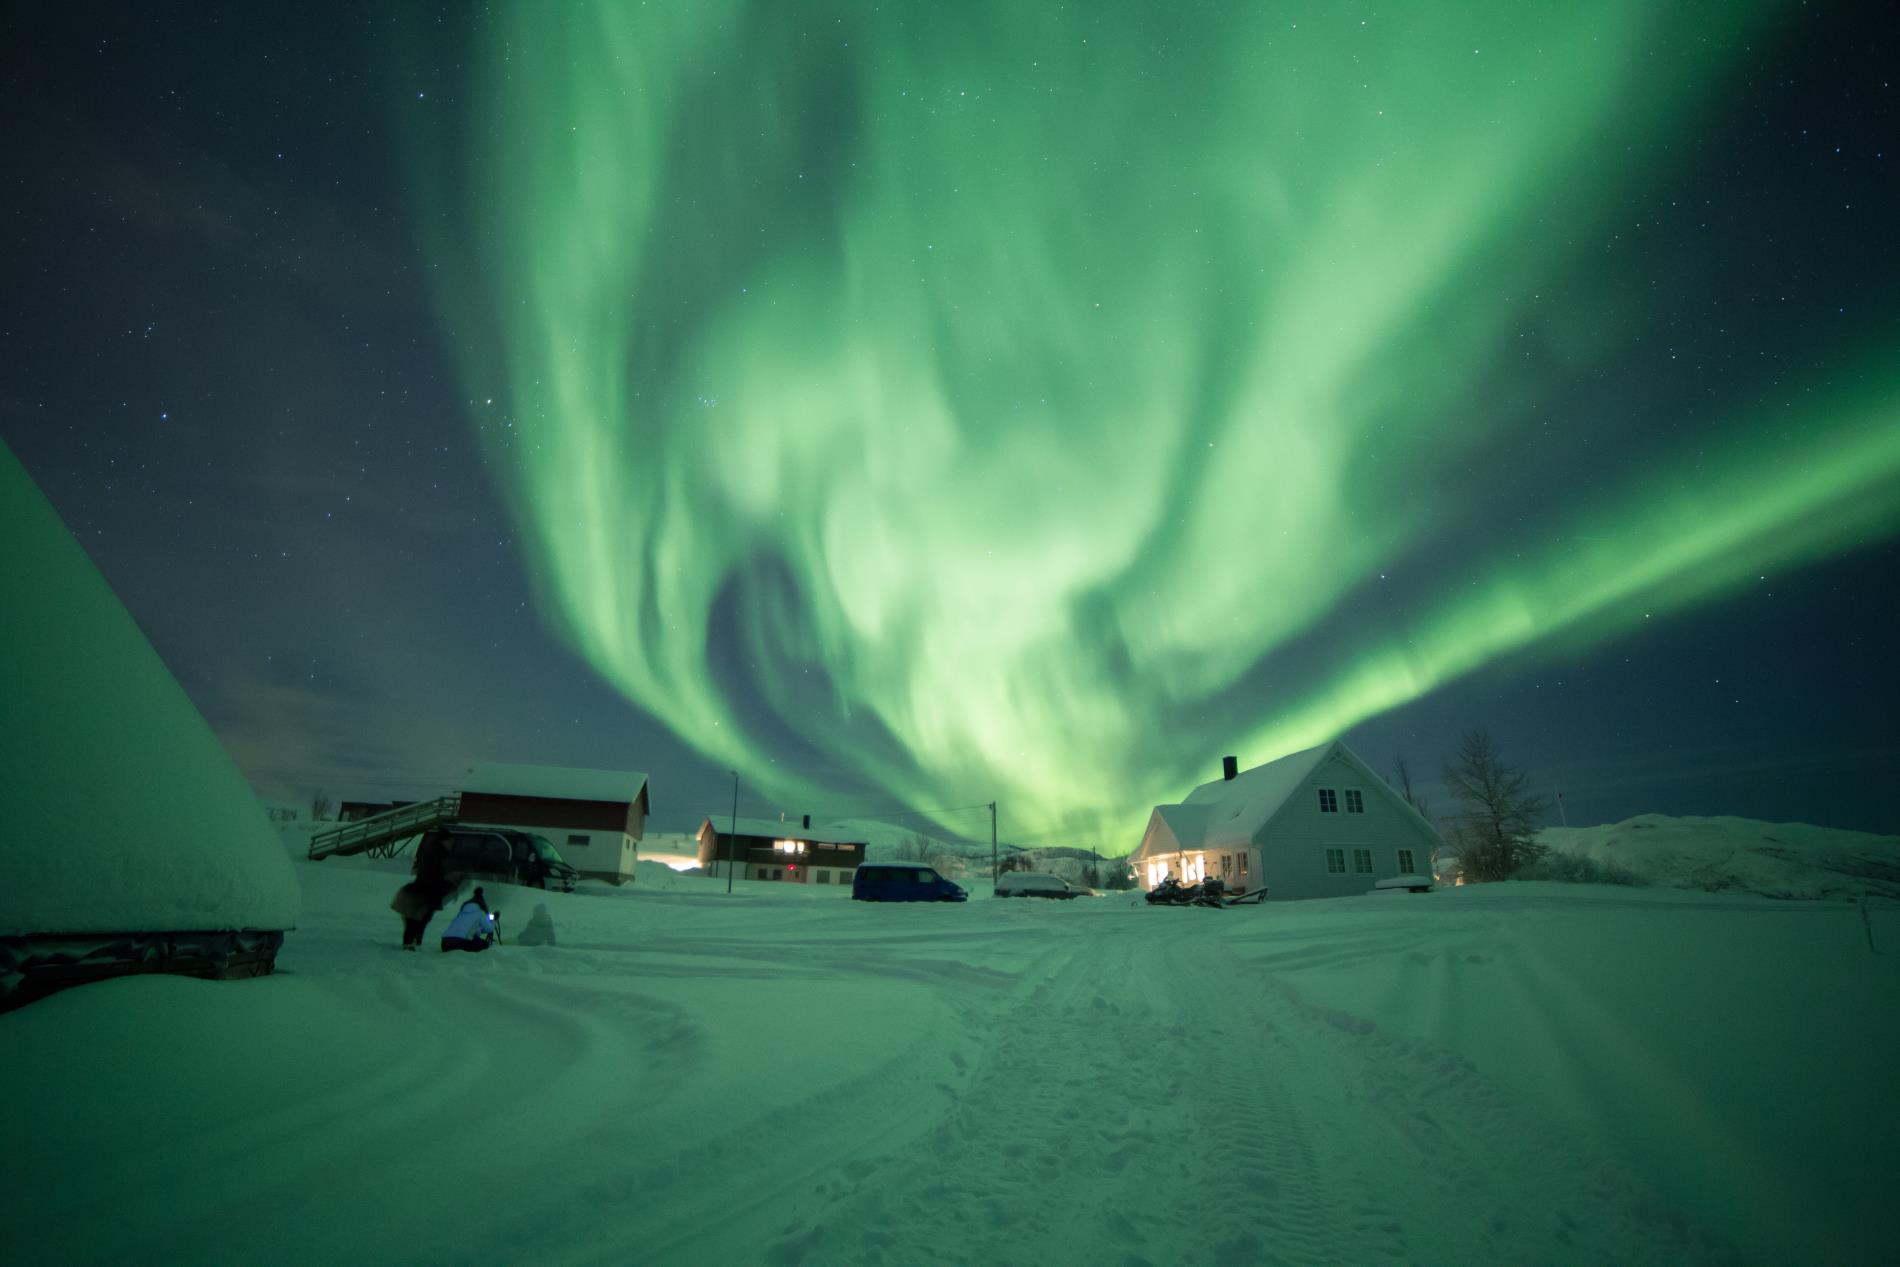 Caccia all’Aurora Boreale e avventure nell’ Artico. 29/1 - 01/02/2020